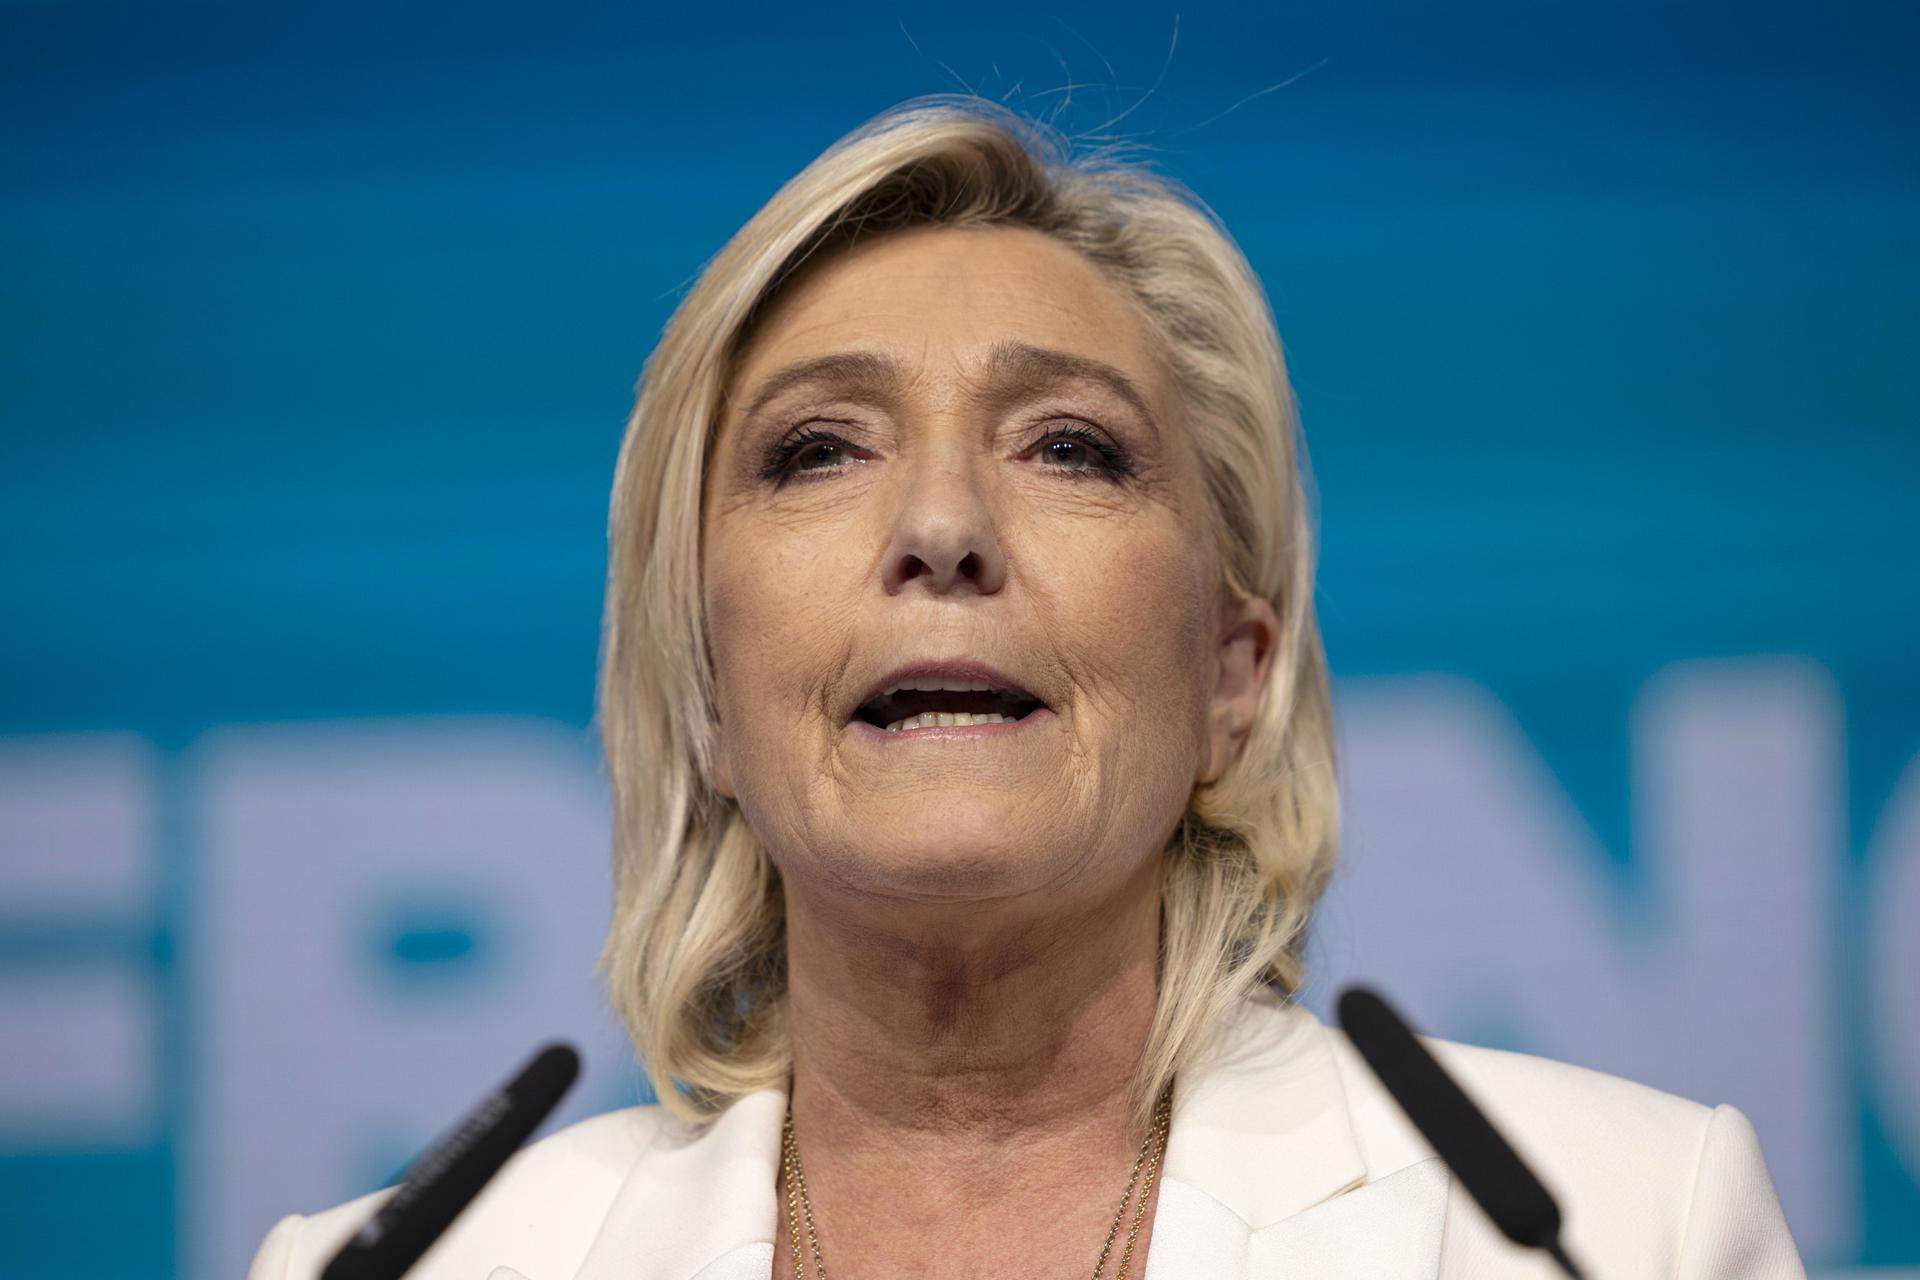 El partido de Le Pen asegura que privatizará la televisión pública francesa, si gana las elecciones